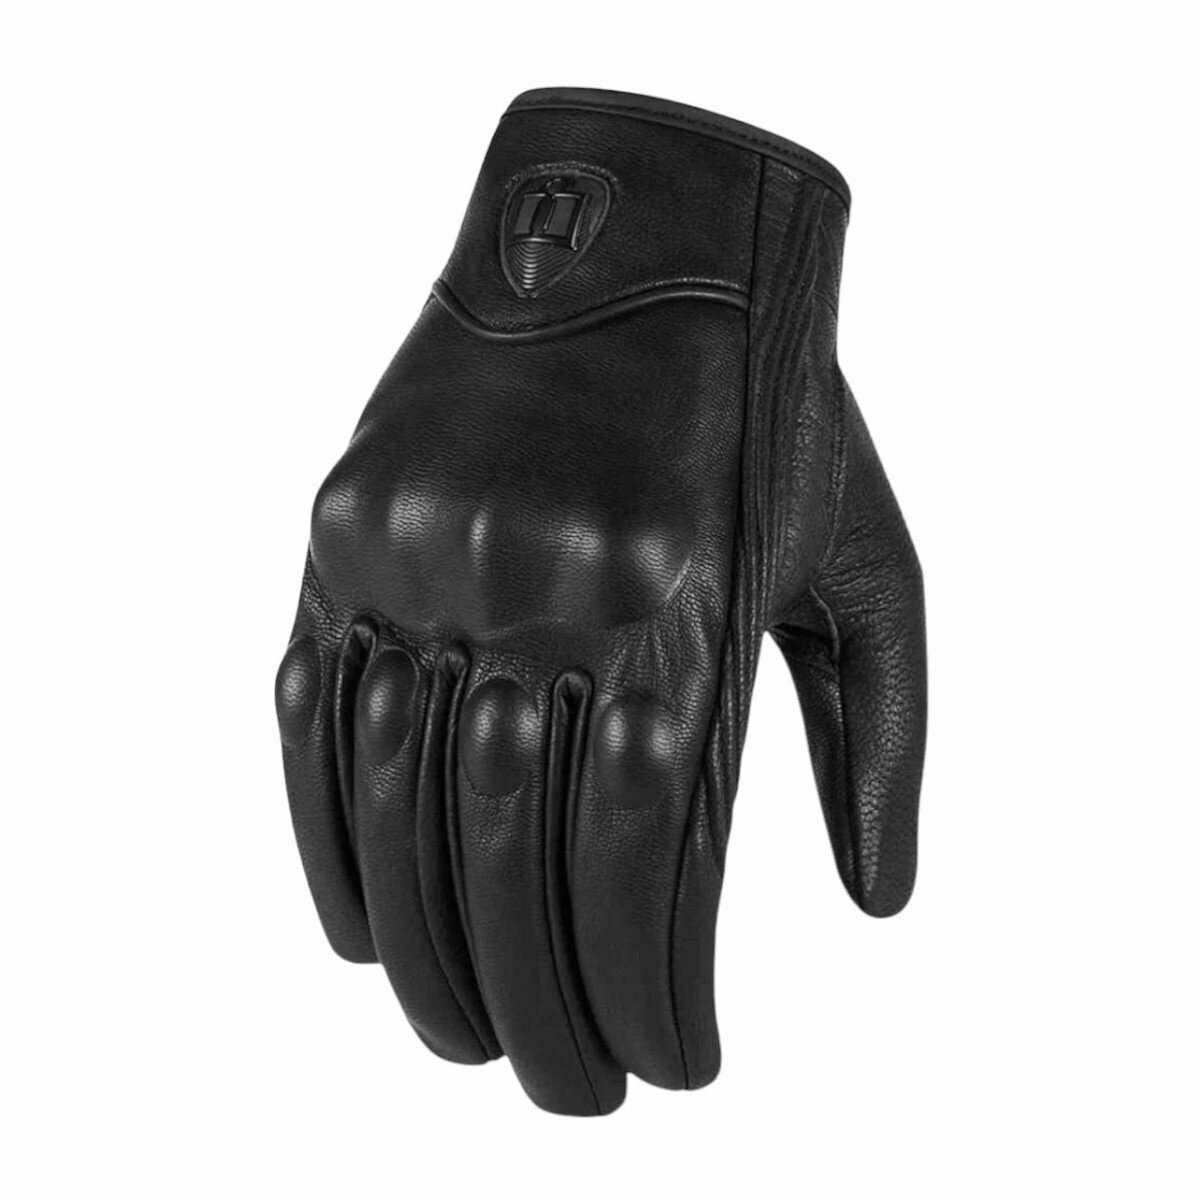 Мотоперчатки перчатки кожаные Y-12 для мотоциклиста на мотоцикл скутер мопед квадроцикл, черные, L